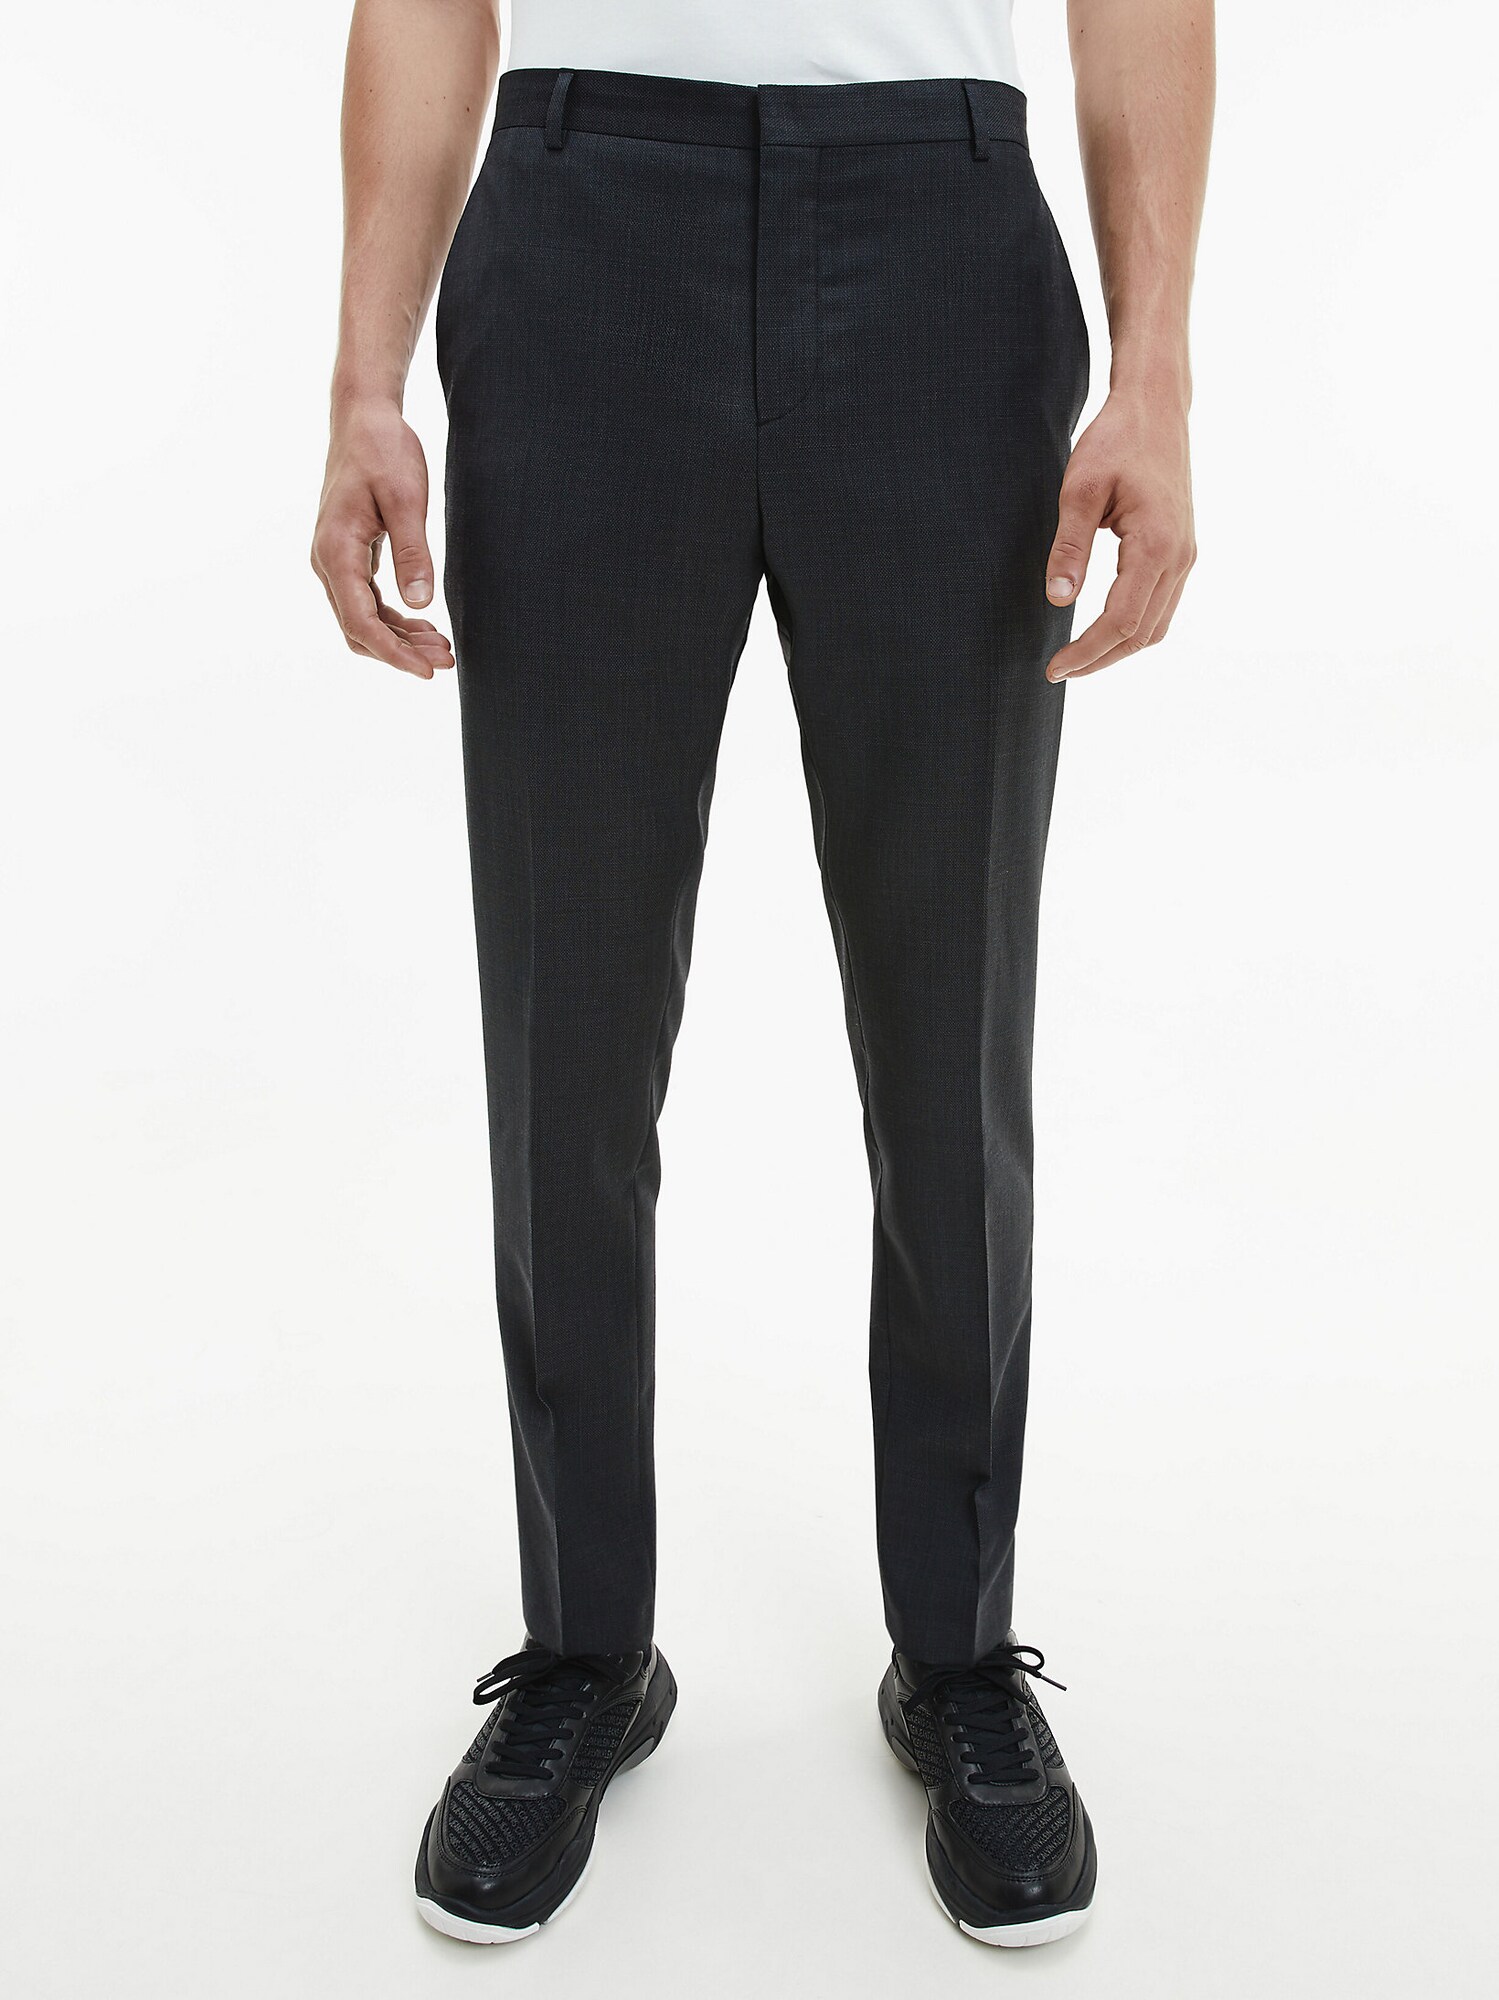 Pantalon Calvin Klein